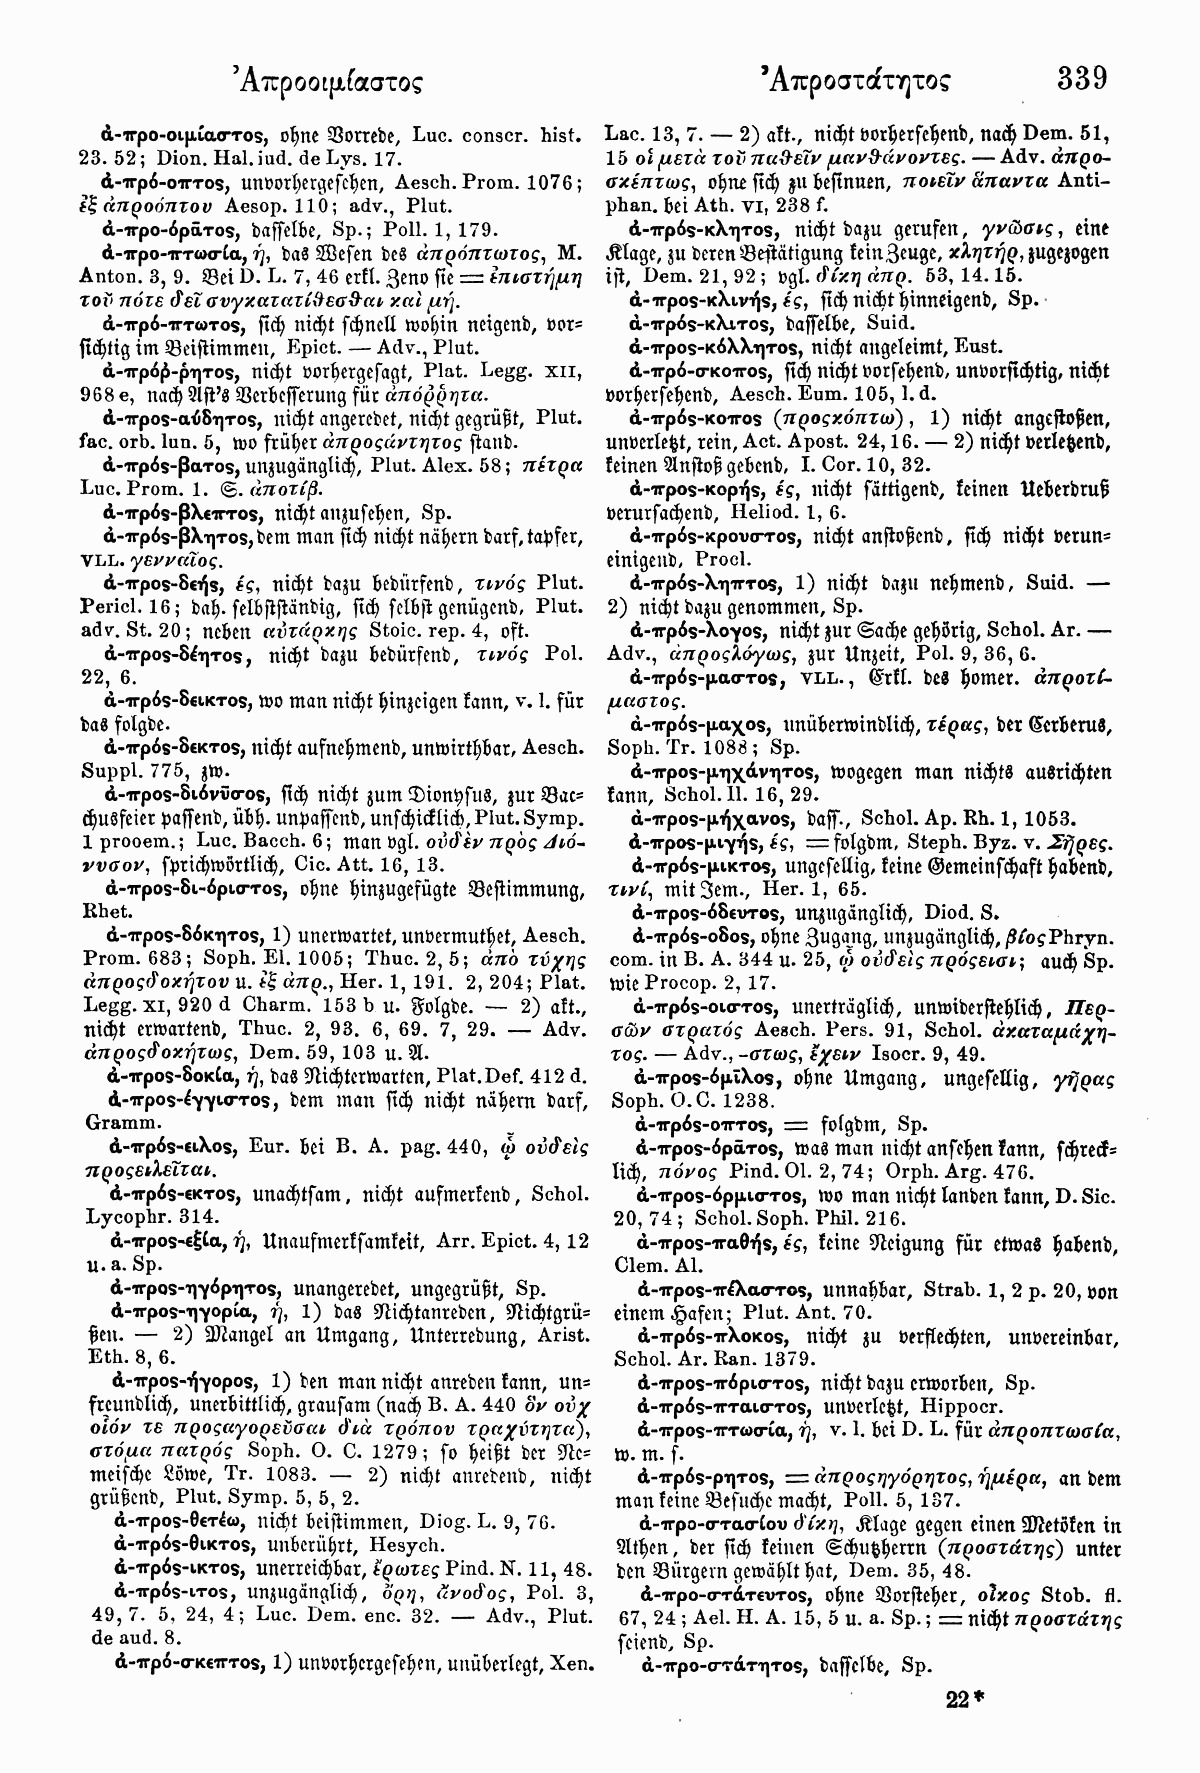 Wilhelm Pape: Handwörterbuch der griechischen Sprache. Braunschweig <sup>3</sup>1914, Band 1 S. 339